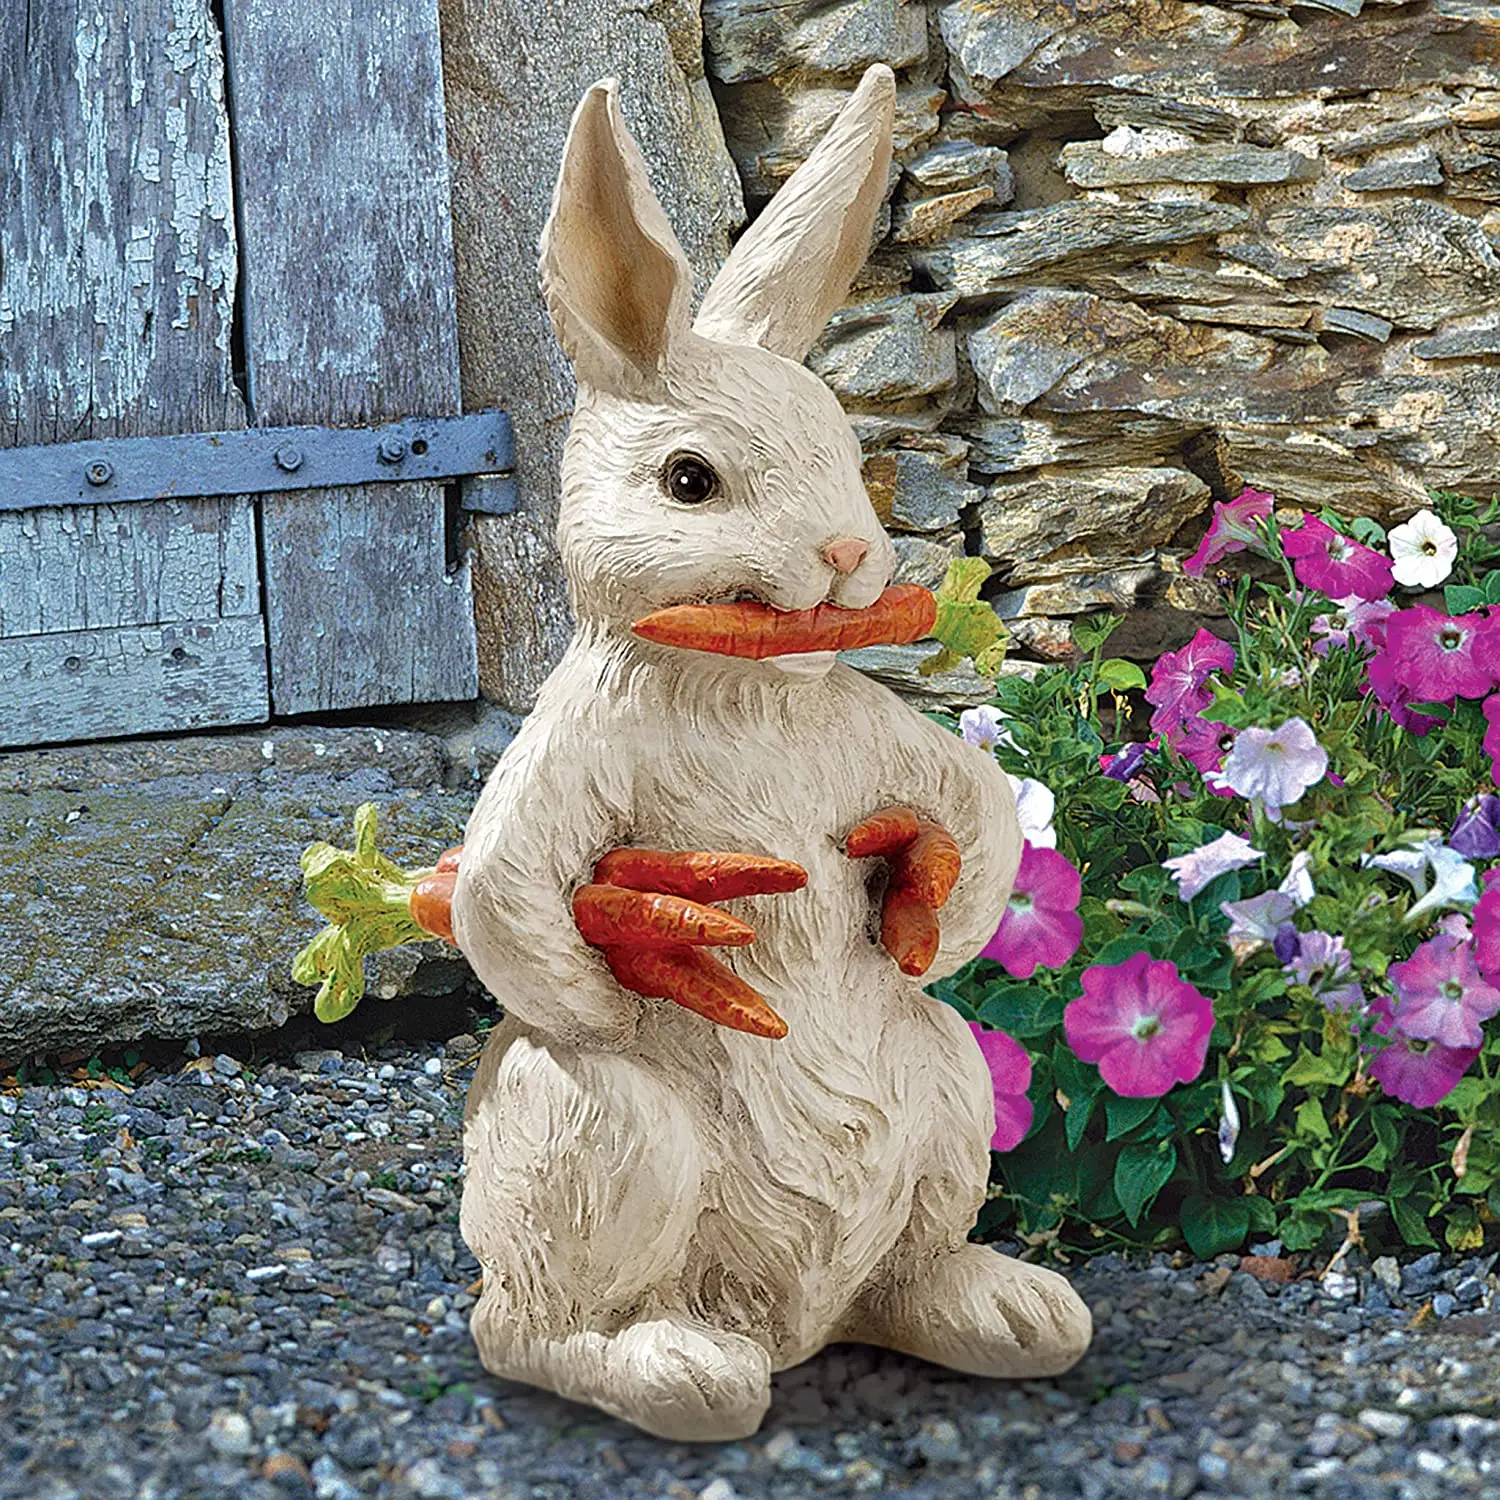 Custom Resin Craft Home Outdoor Garden Decor Rabbit Figurine Easter Bunny Statue con carote